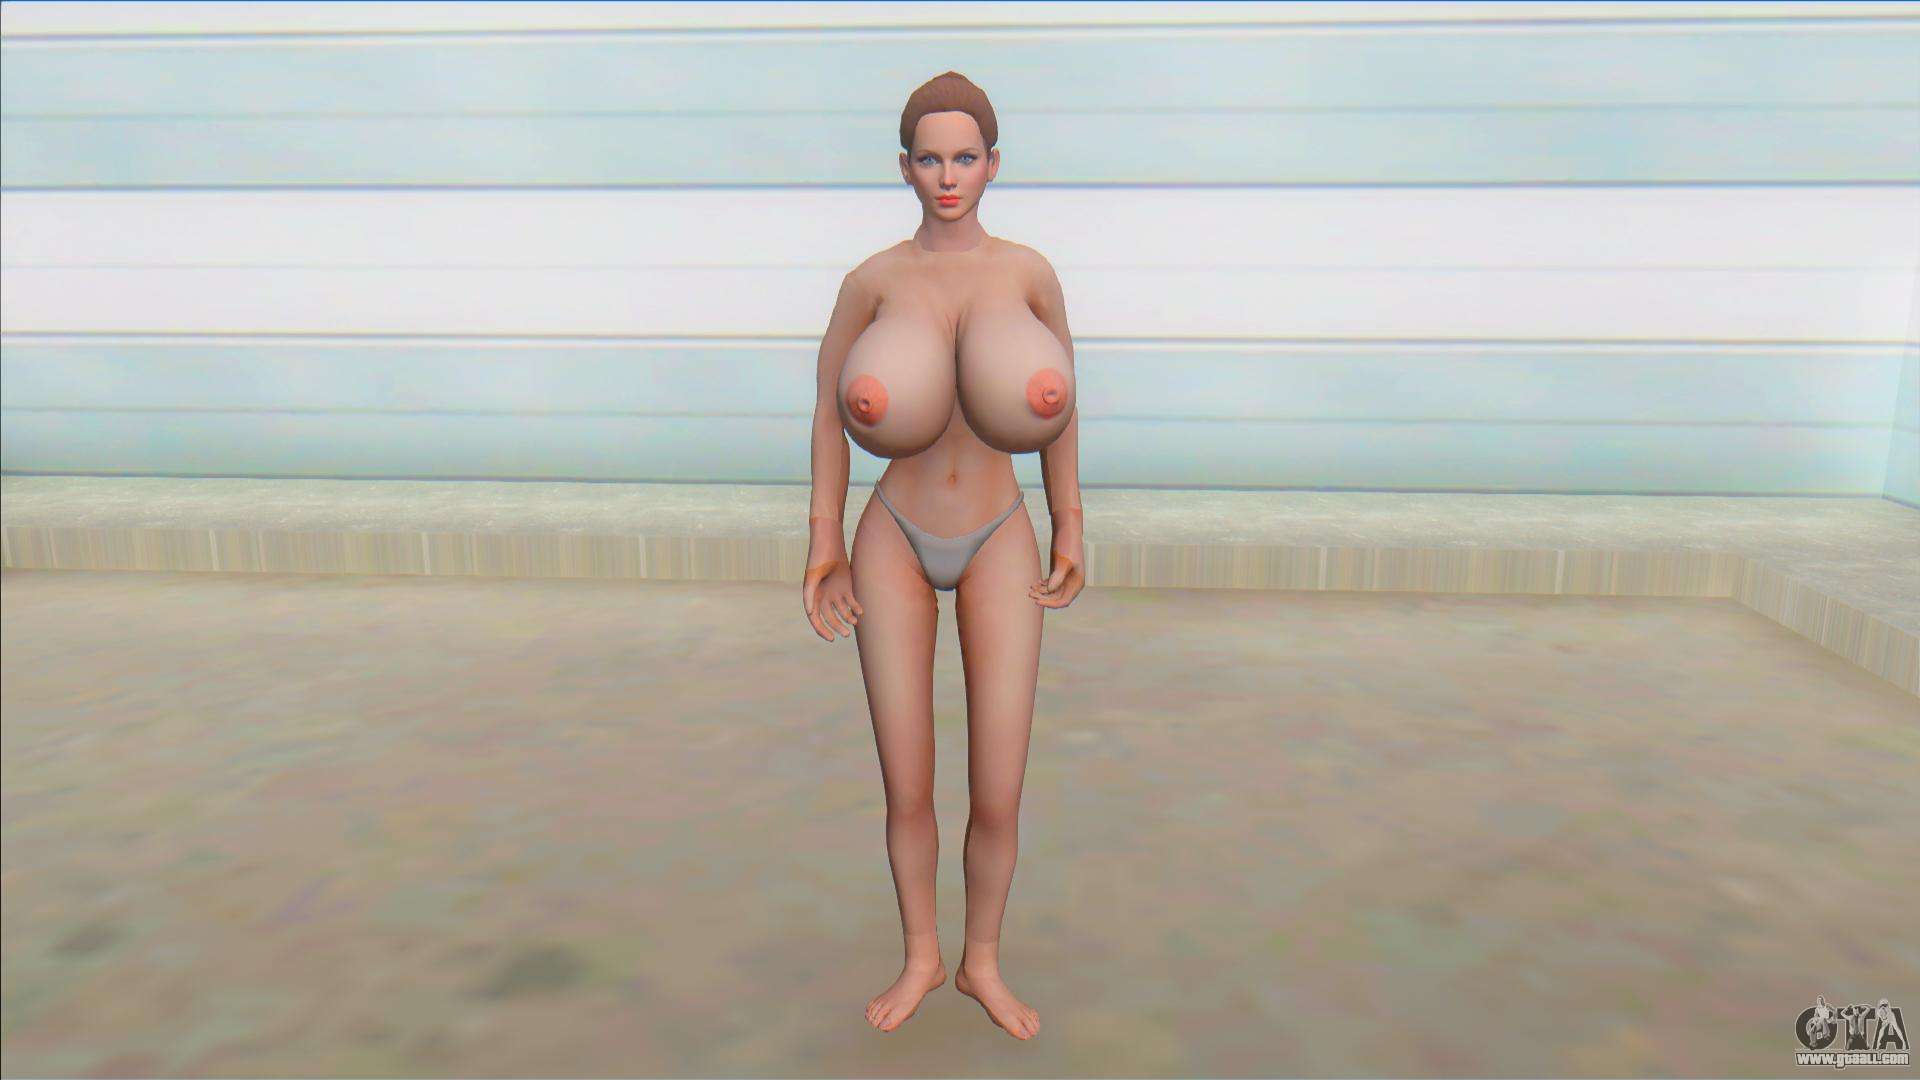 Helena Big Boobs Nude Mod for GTA San Andreas